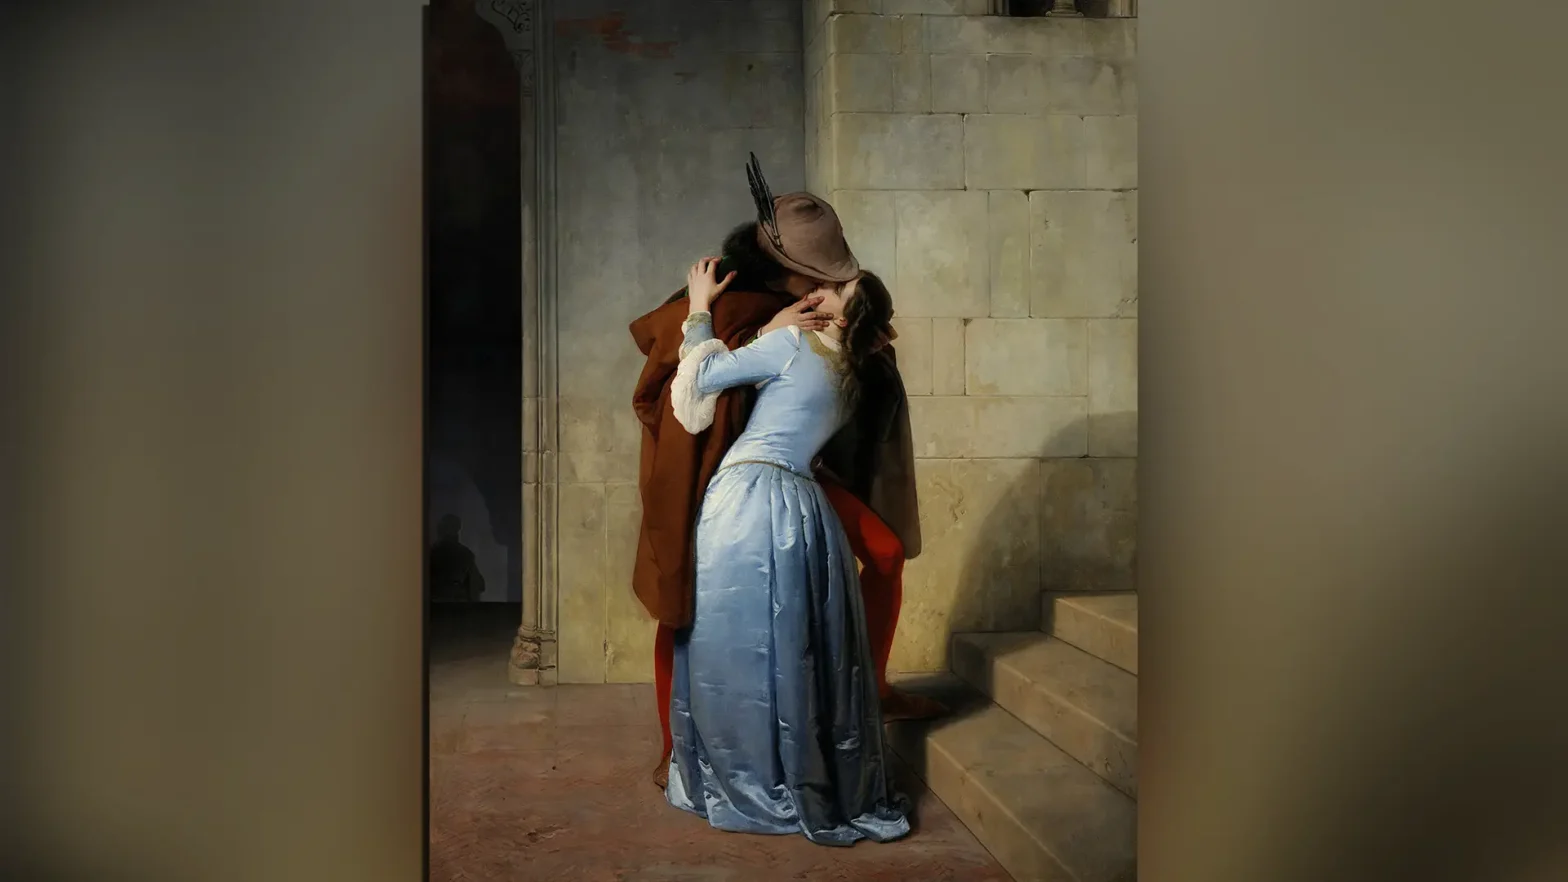 Obraz Pocałunek Francesko Hajeza. Obraz przedstawia parę, ubraną jak w średniowieczu, wymieniającą pocałunek. Mężczyzna w brązowej pelerynie i kobieta w niebieskiej sukni stoją u stóp schodów. Po lewej stronie znajduje się otwór, który prowadzi na parter, a w podświetlonym świetle jest cień sylwetki postaci, schodzącej po schodach. Para jest w centrum dzieła. Twarz mężczyzny jest ukryta pod kapeluszem, ale wyraźnie widać, że usta pary się stykają.